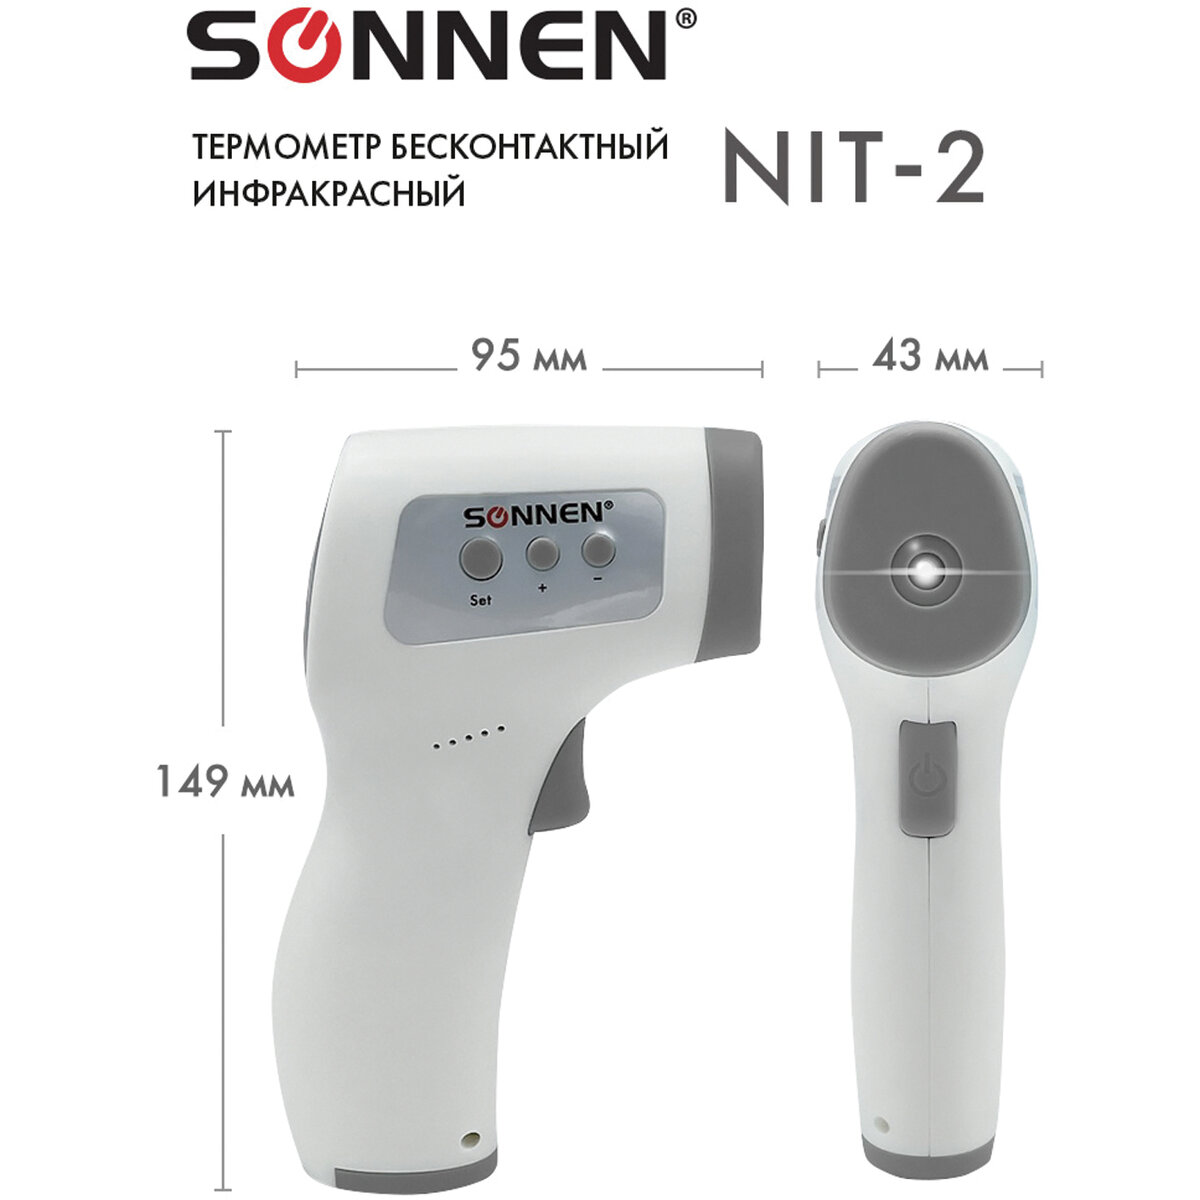 Термометр Sonnen бесконтактный инфракрасный NIT-2 GP-300 электронный - фото 13